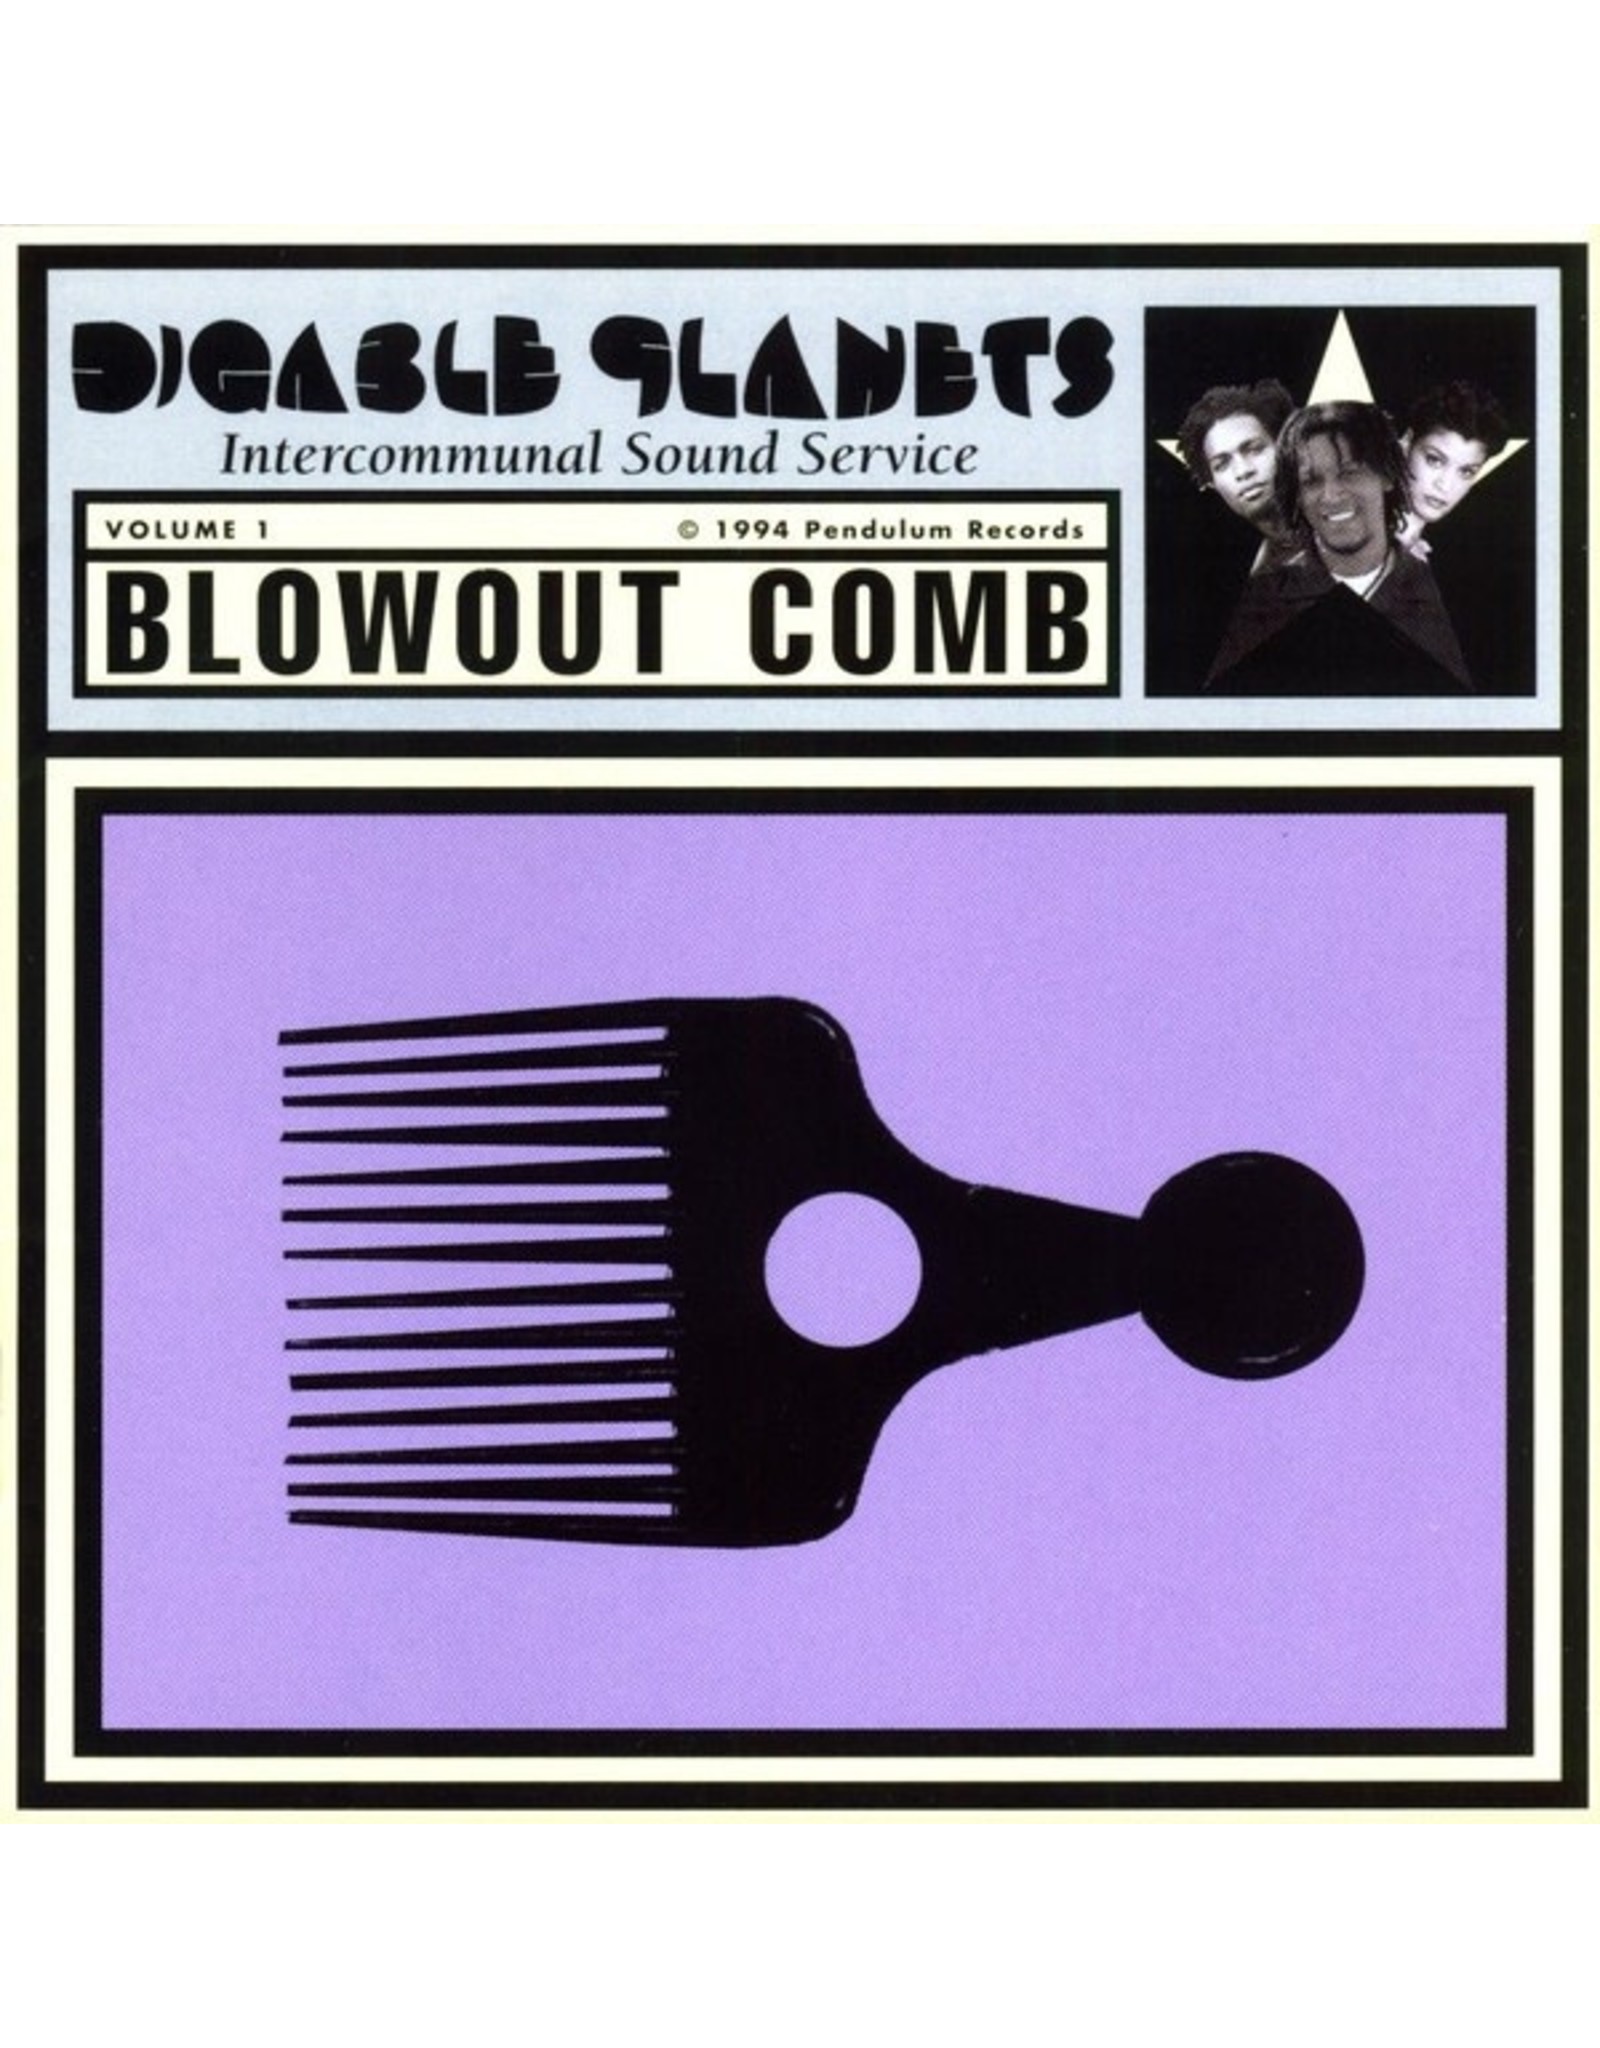 Digable Planets - Blowout Comb (Dazed & Amazed Vinyl)